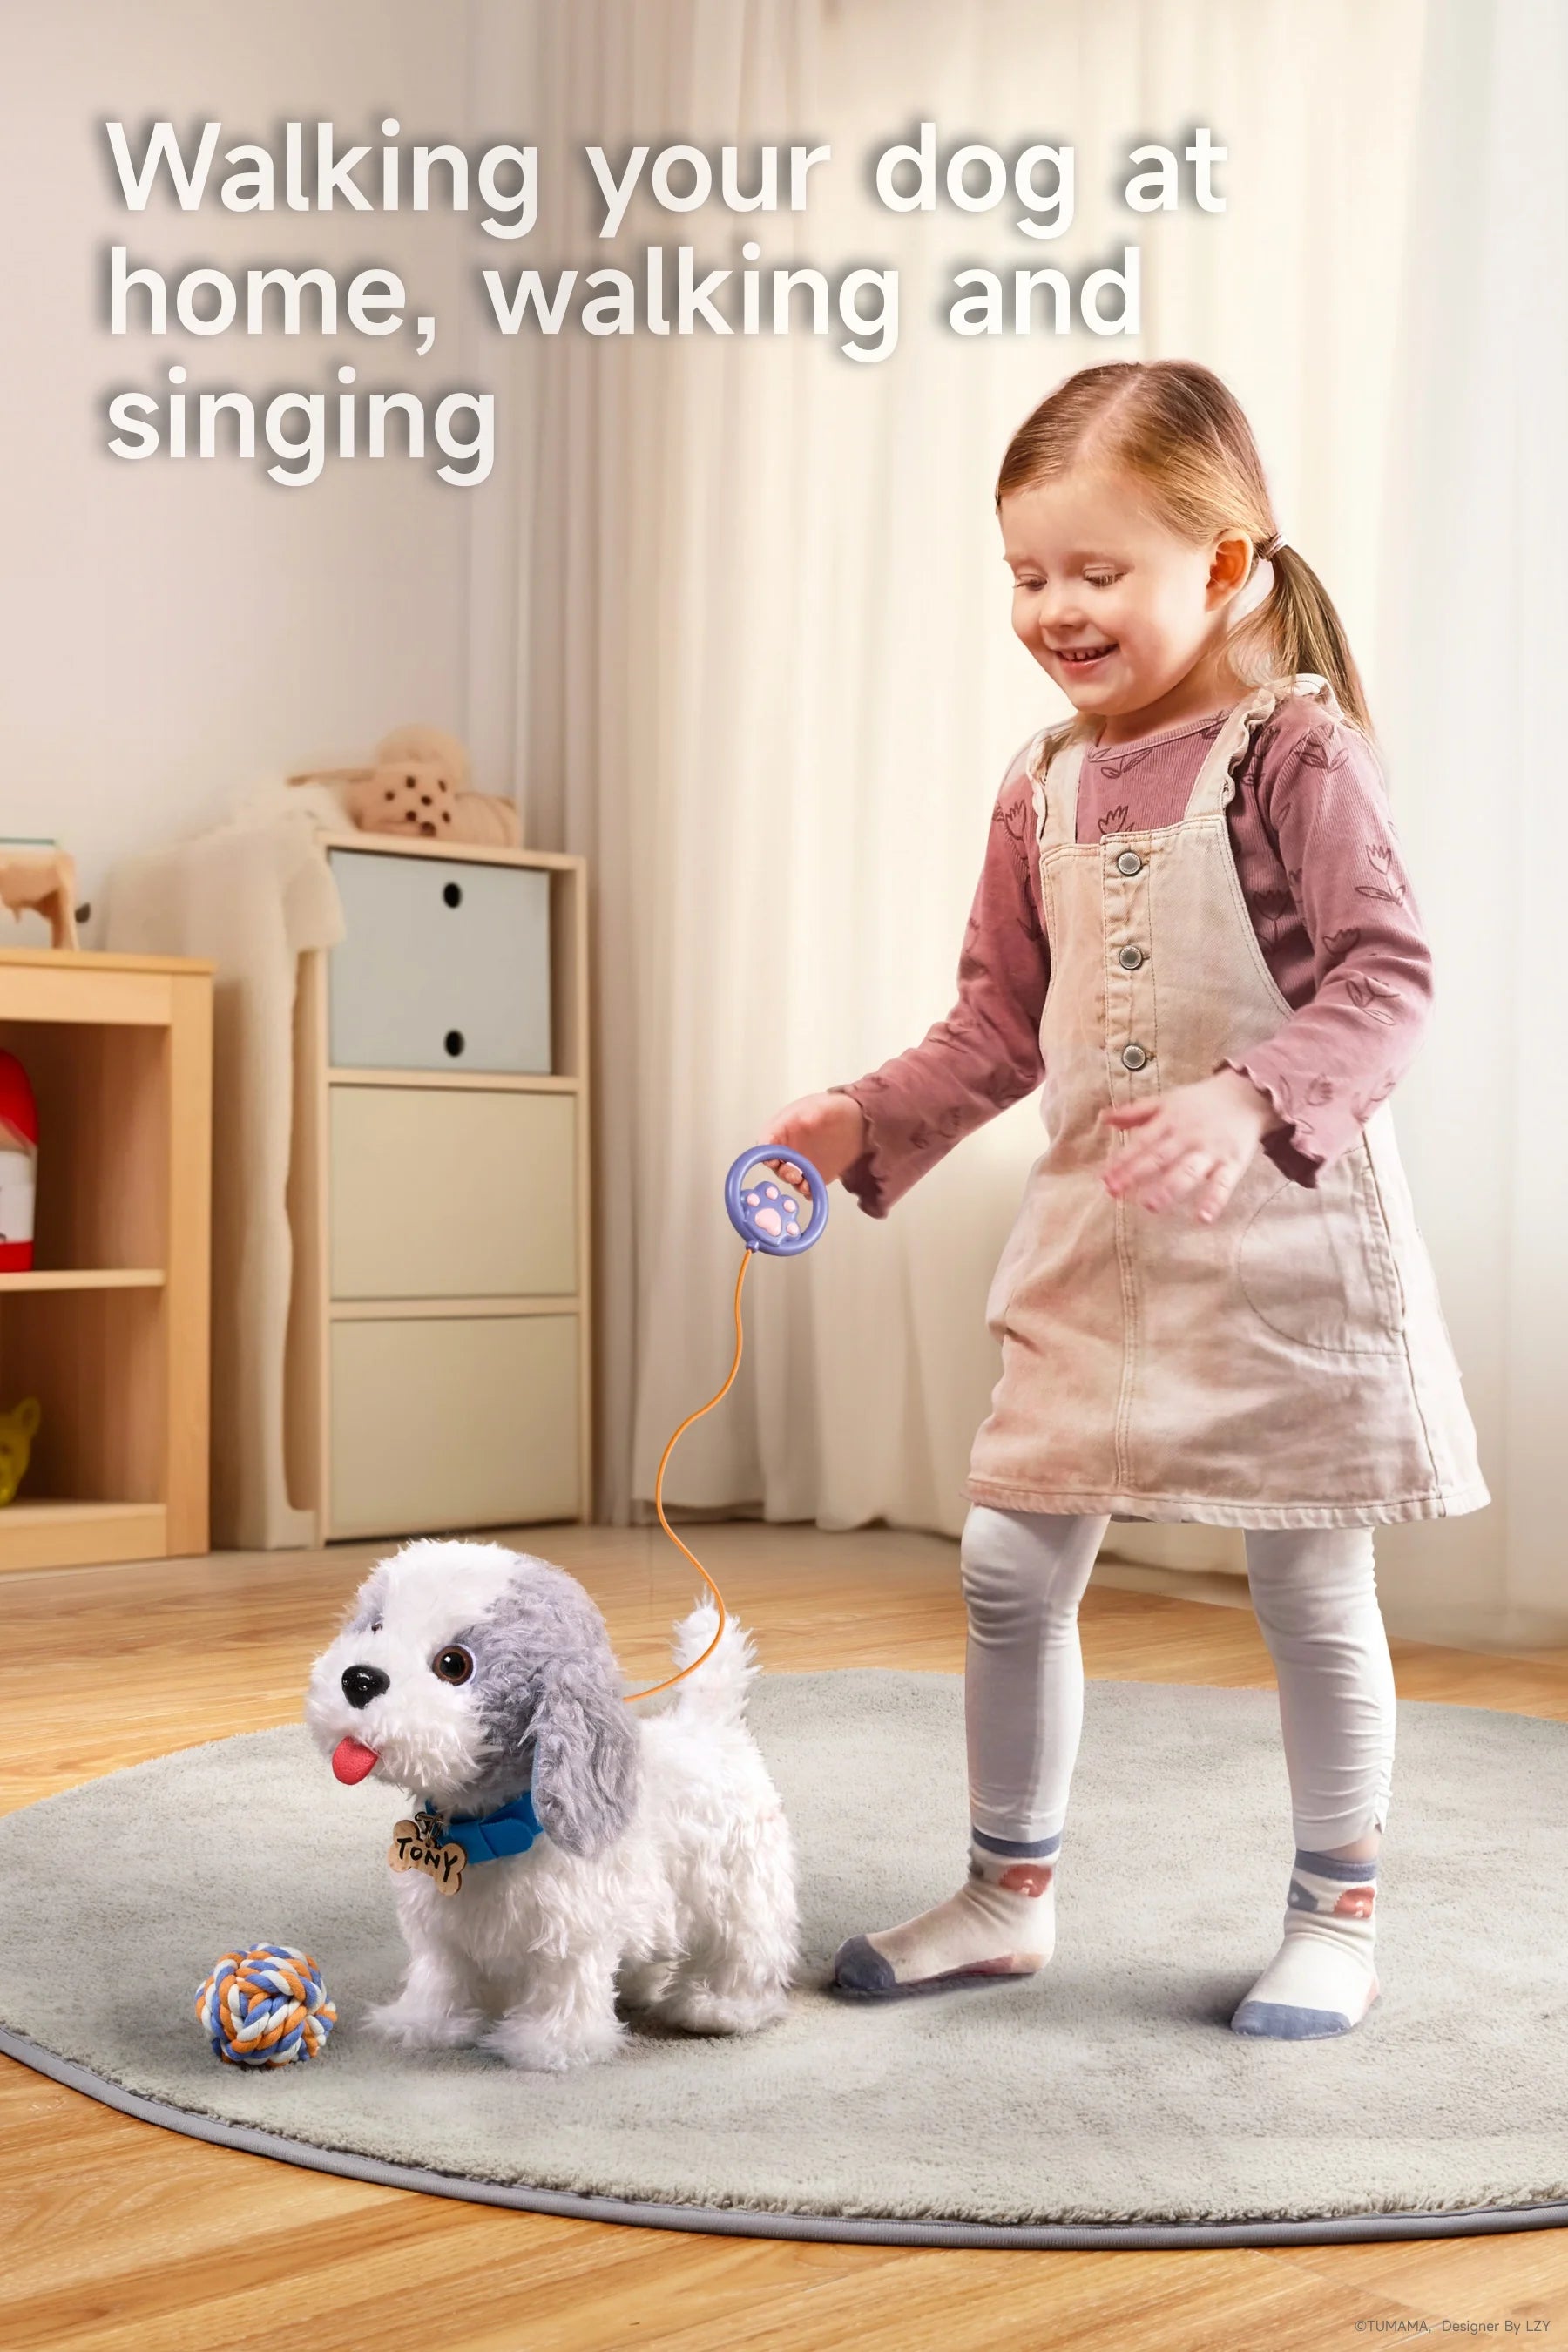 Realistic dog toy set featuring walking barking singing licking